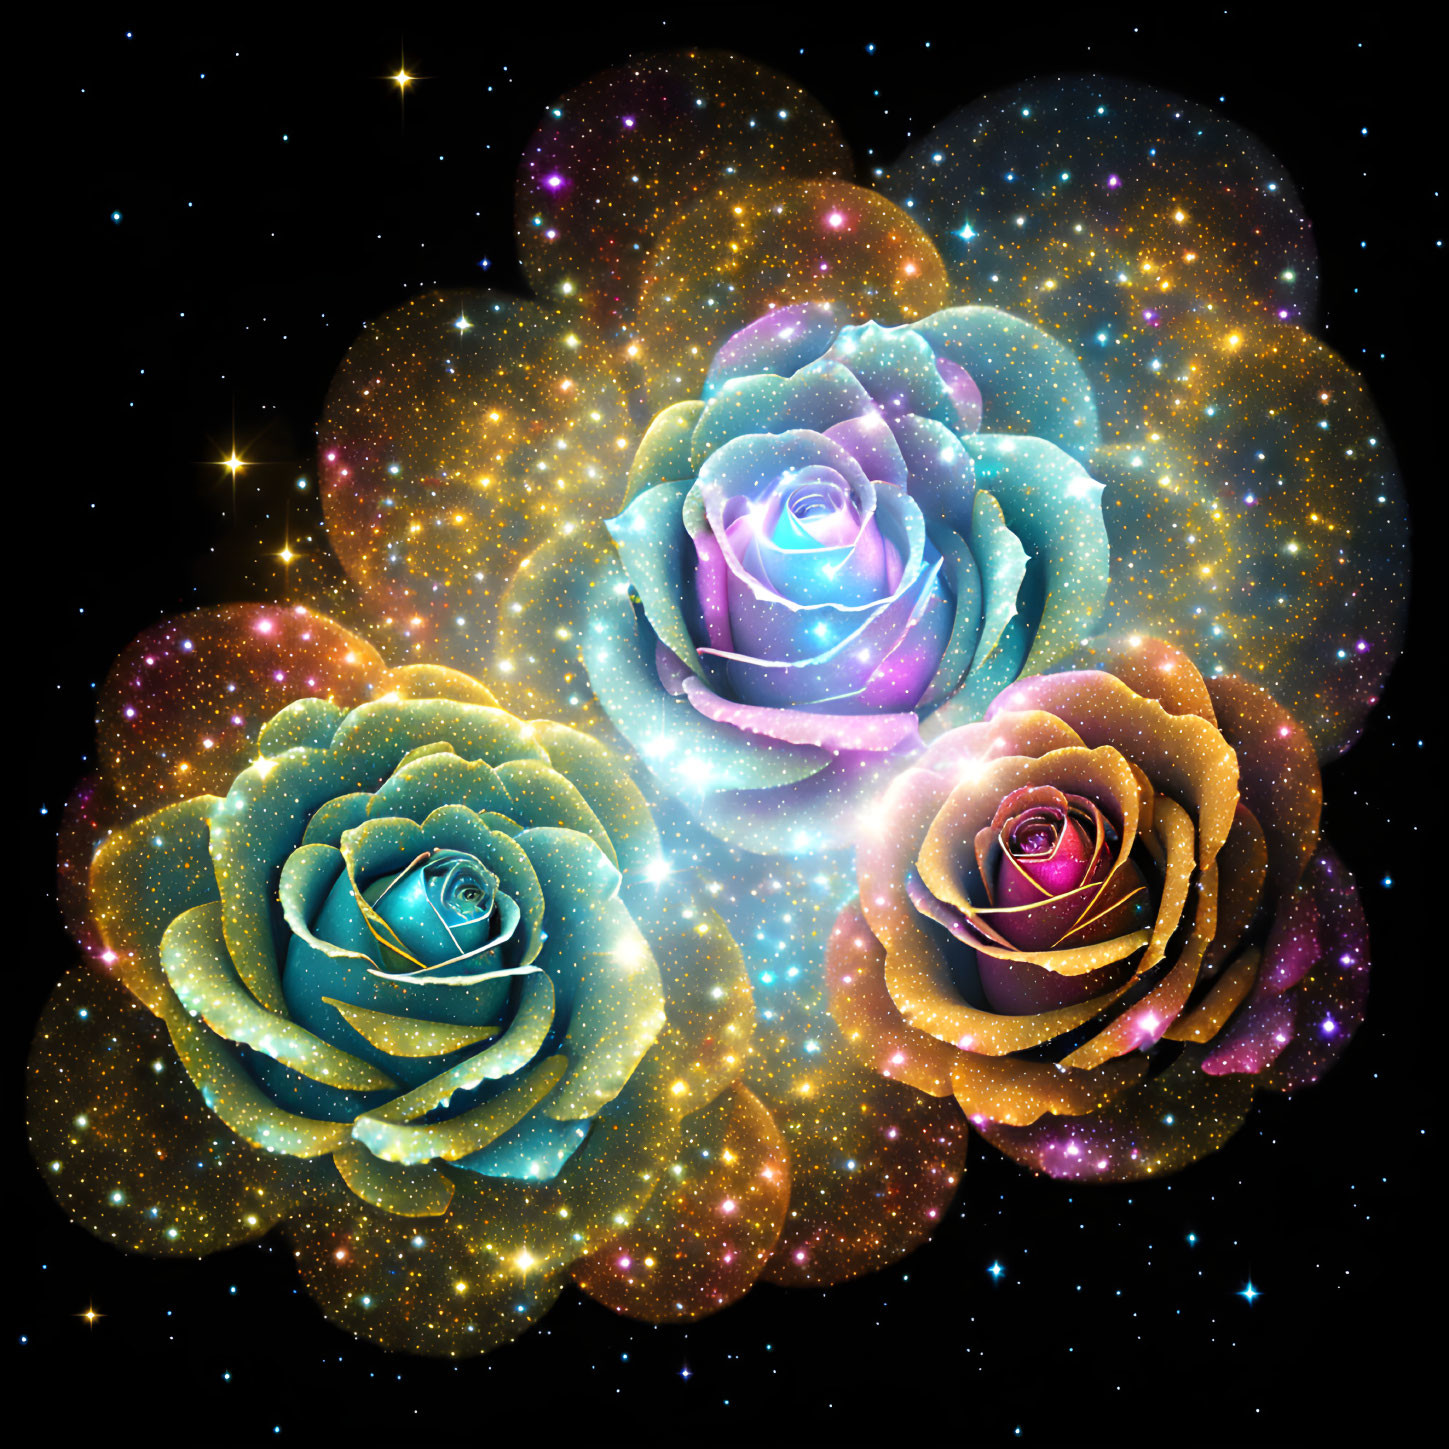 Cosmic roses